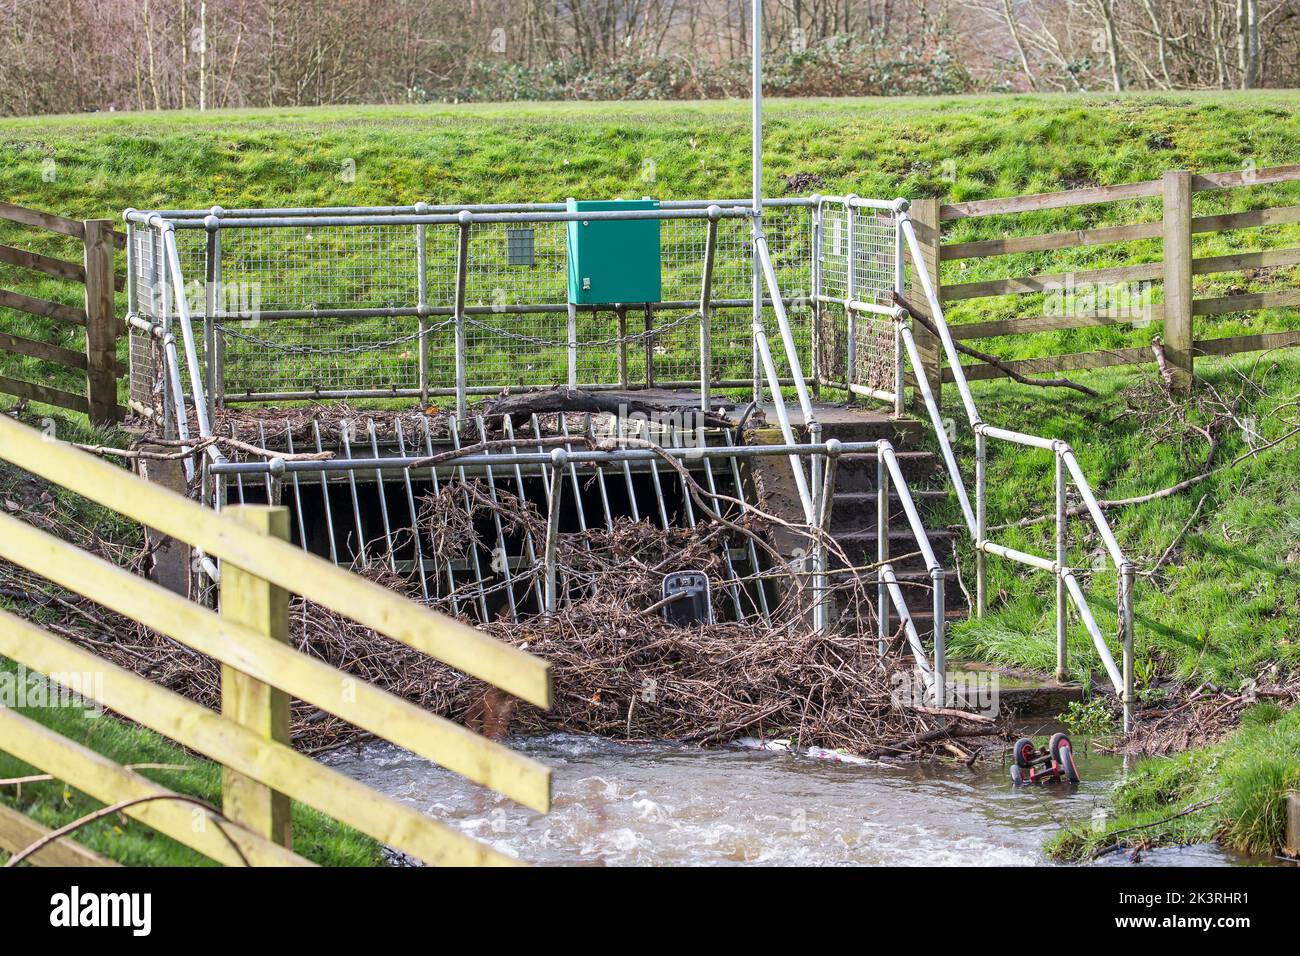 Die Blockierung des Managements im öffentlichen Park in Großbritannien verhindert, dass Rückstände den Wasserfluss behindern und verringert das Hochwasserrisiko im Bereich der Standorte. Stockfoto